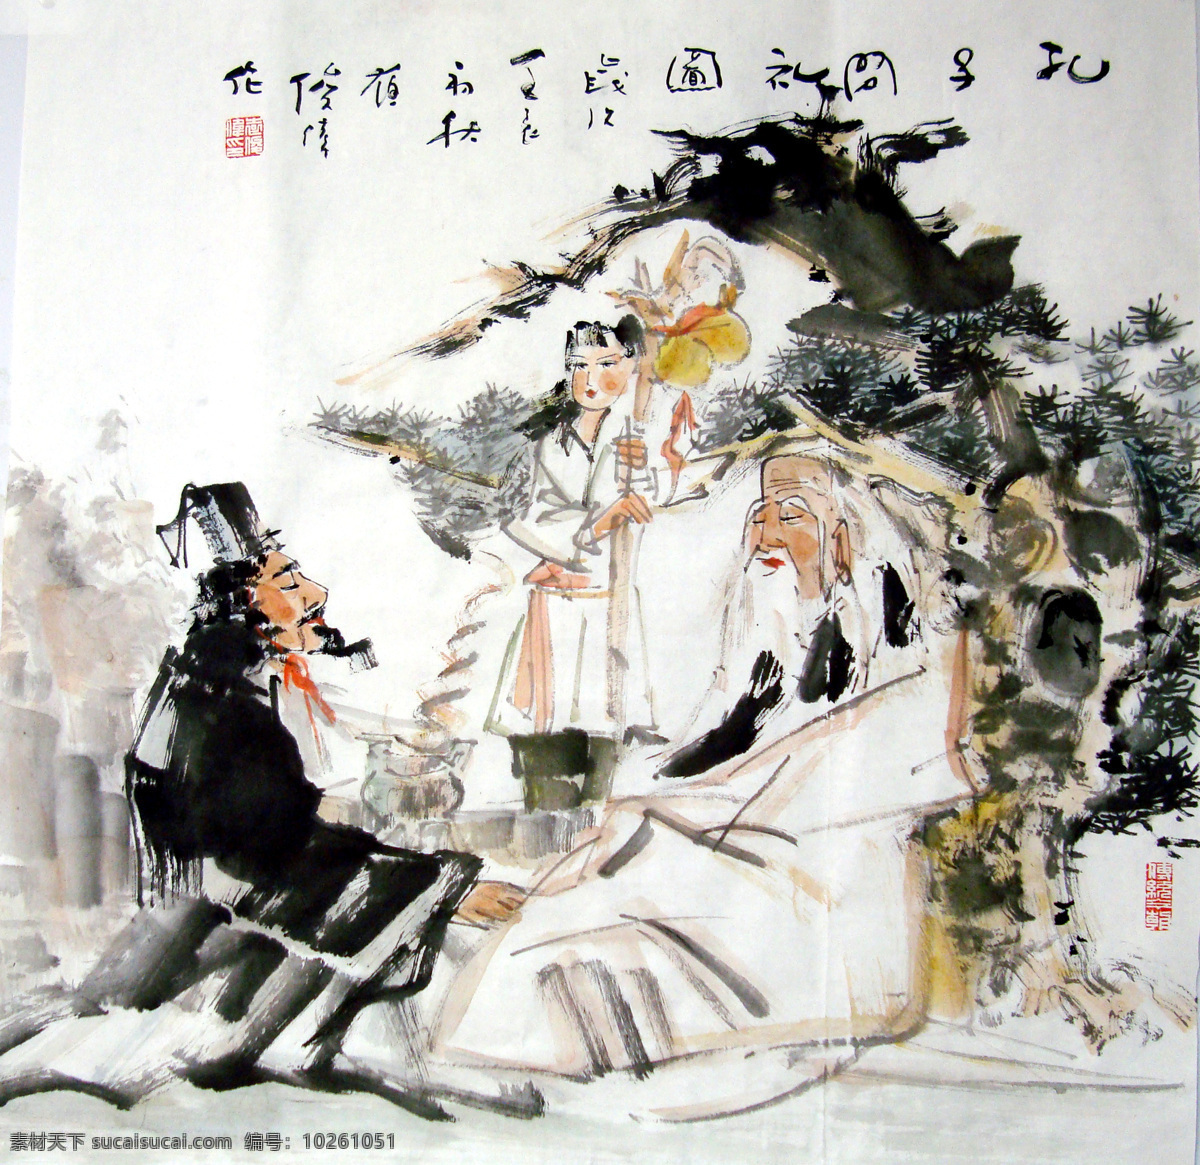 孔子讲学 国画设计 国画 水墨 人物 孔子 儒家学派 儒学 绘画书法 文化艺术